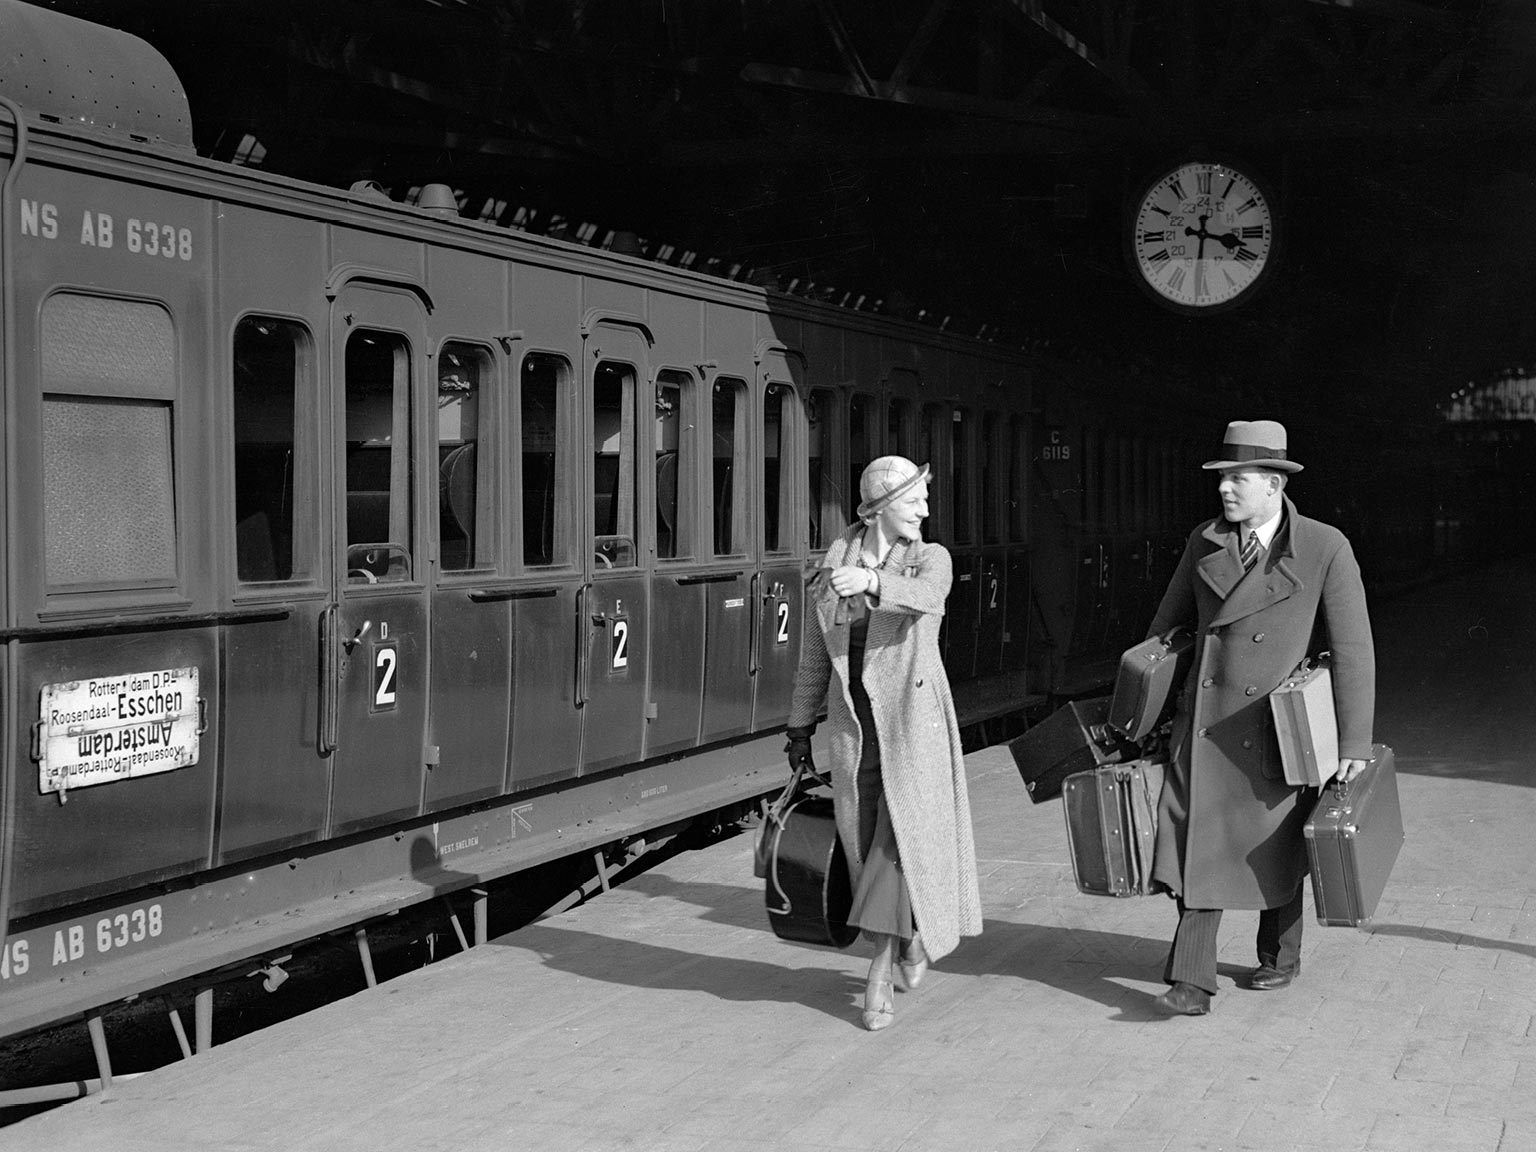 Fotomodellen Waldschmidt en Sandhaus bij coupérijtuig, Amsterdam CS, 1932 | Foto: Willem van de Poll/Nationaal Archief CC-BY-SA